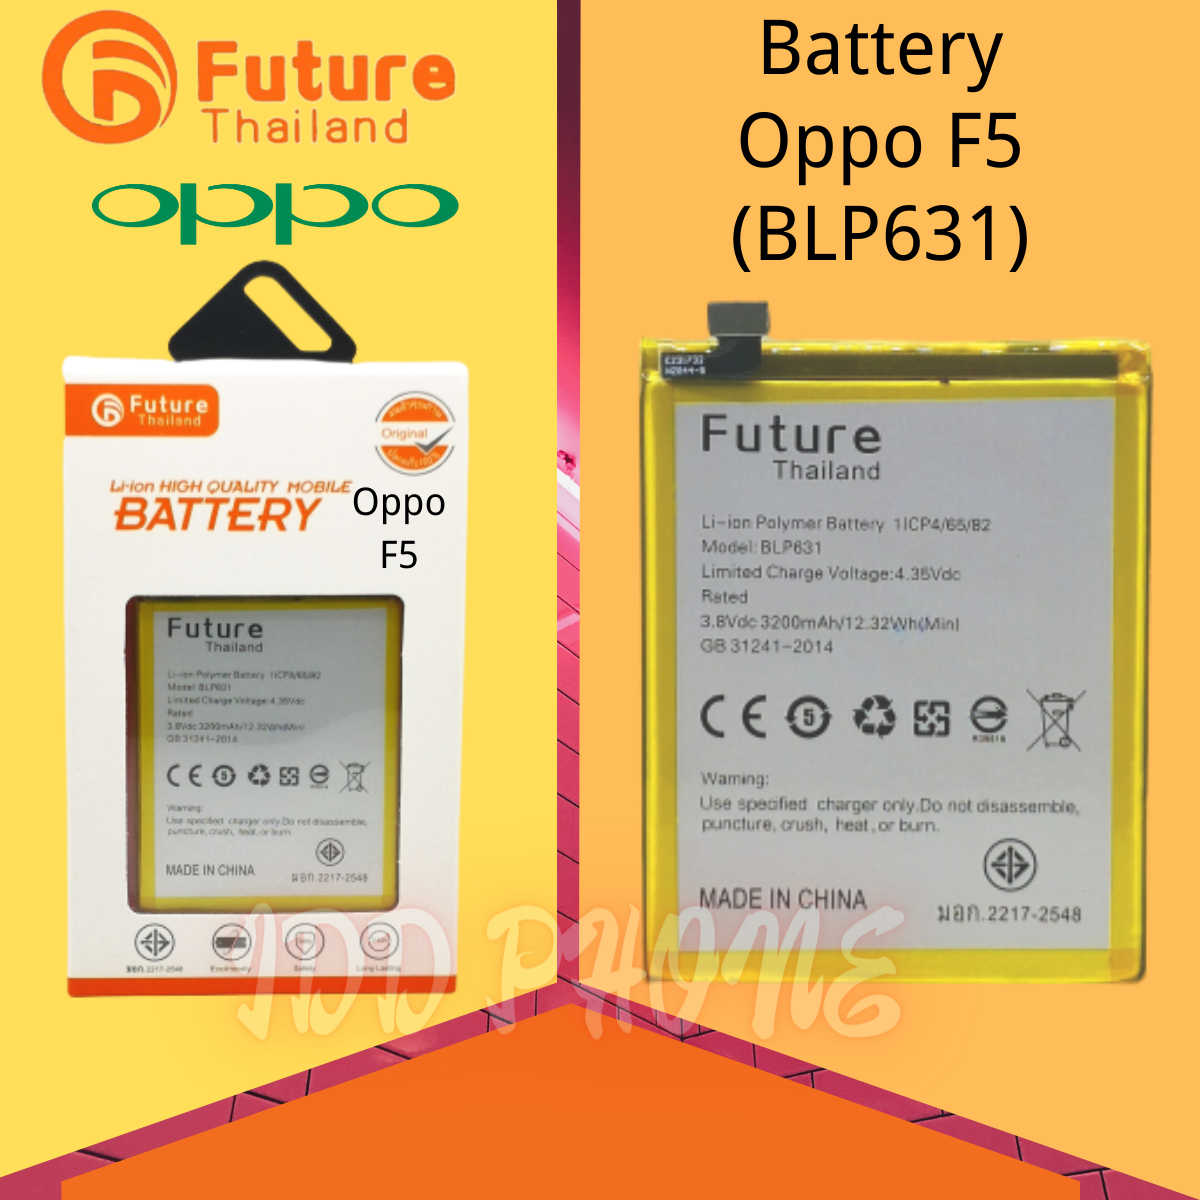 แบตเตอรี่ Future Oppo F5 แบตเตอรี่มือถือ   Battery แบต Oppo F5 มีประกัน 6 เดือน